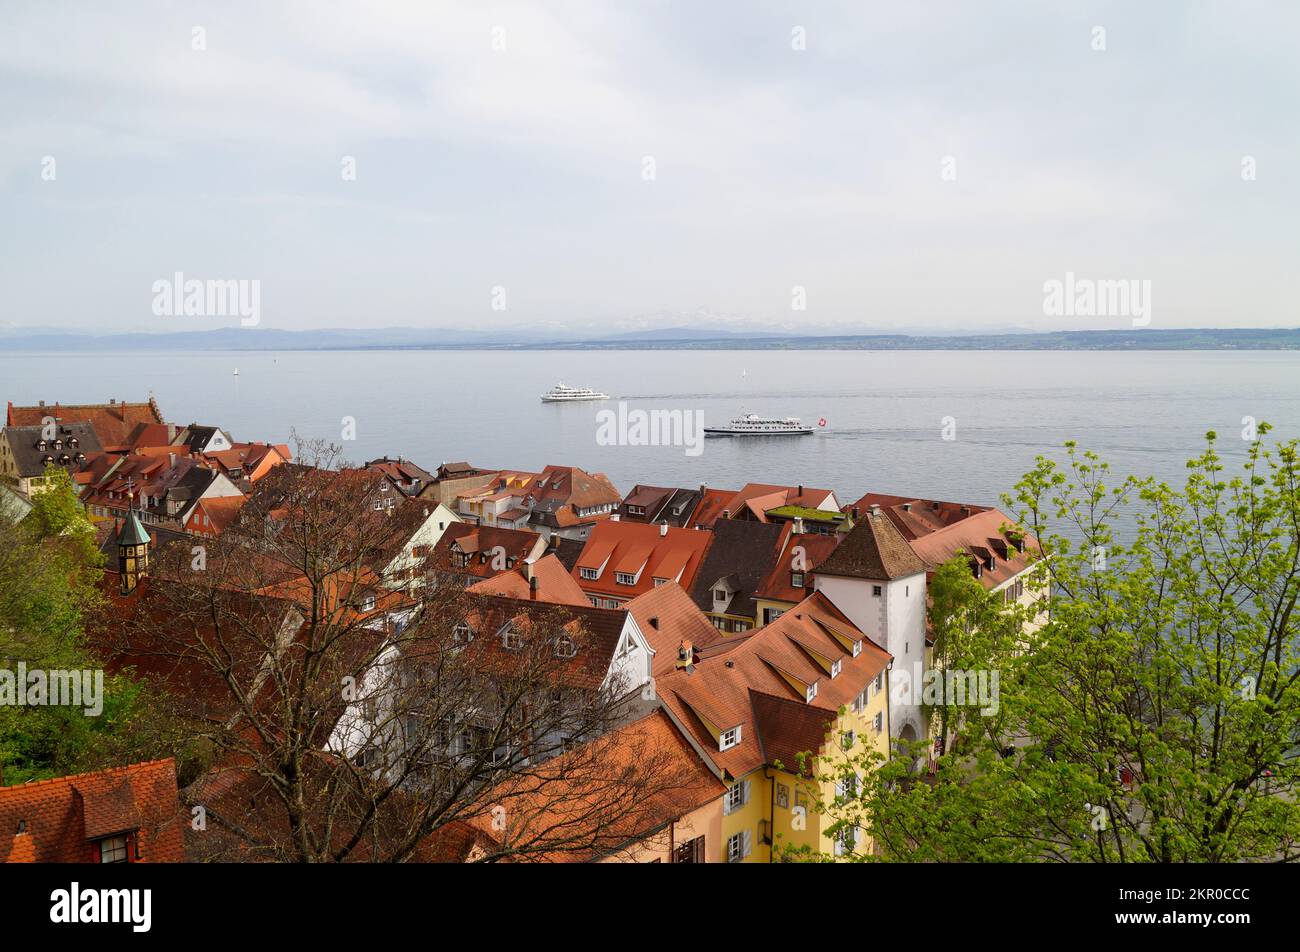 Une vue sur les toits de la ville médiévale allemande pittoresque de Meersburg sur le lac de Constance ou Bodensee lors d'une journée découverte au printemps (Allemagne) Banque D'Images